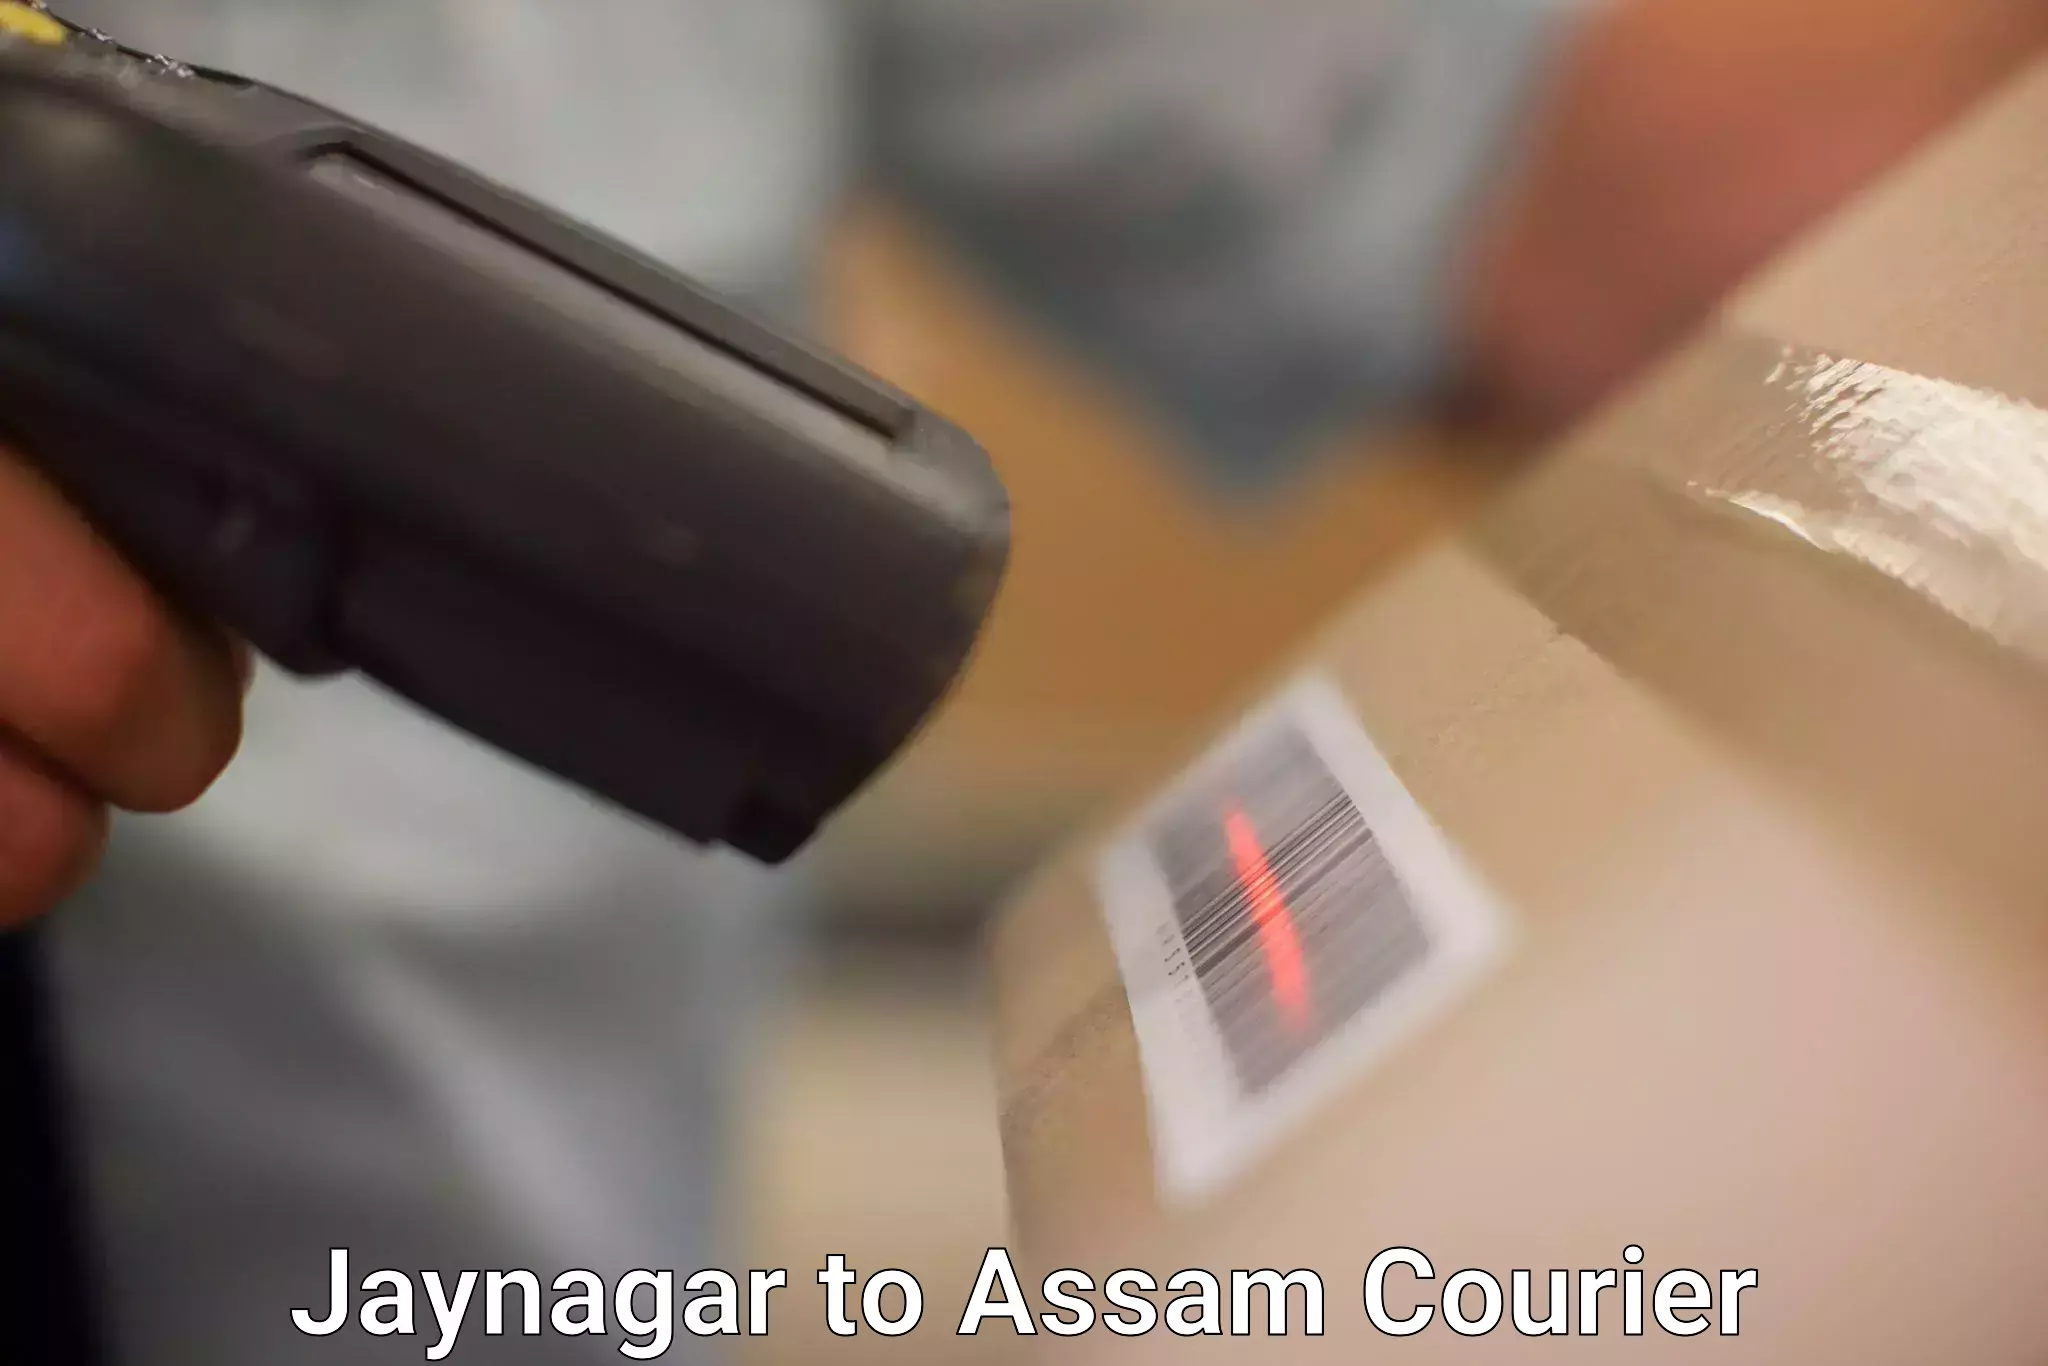 Professional courier handling Jaynagar to Assam